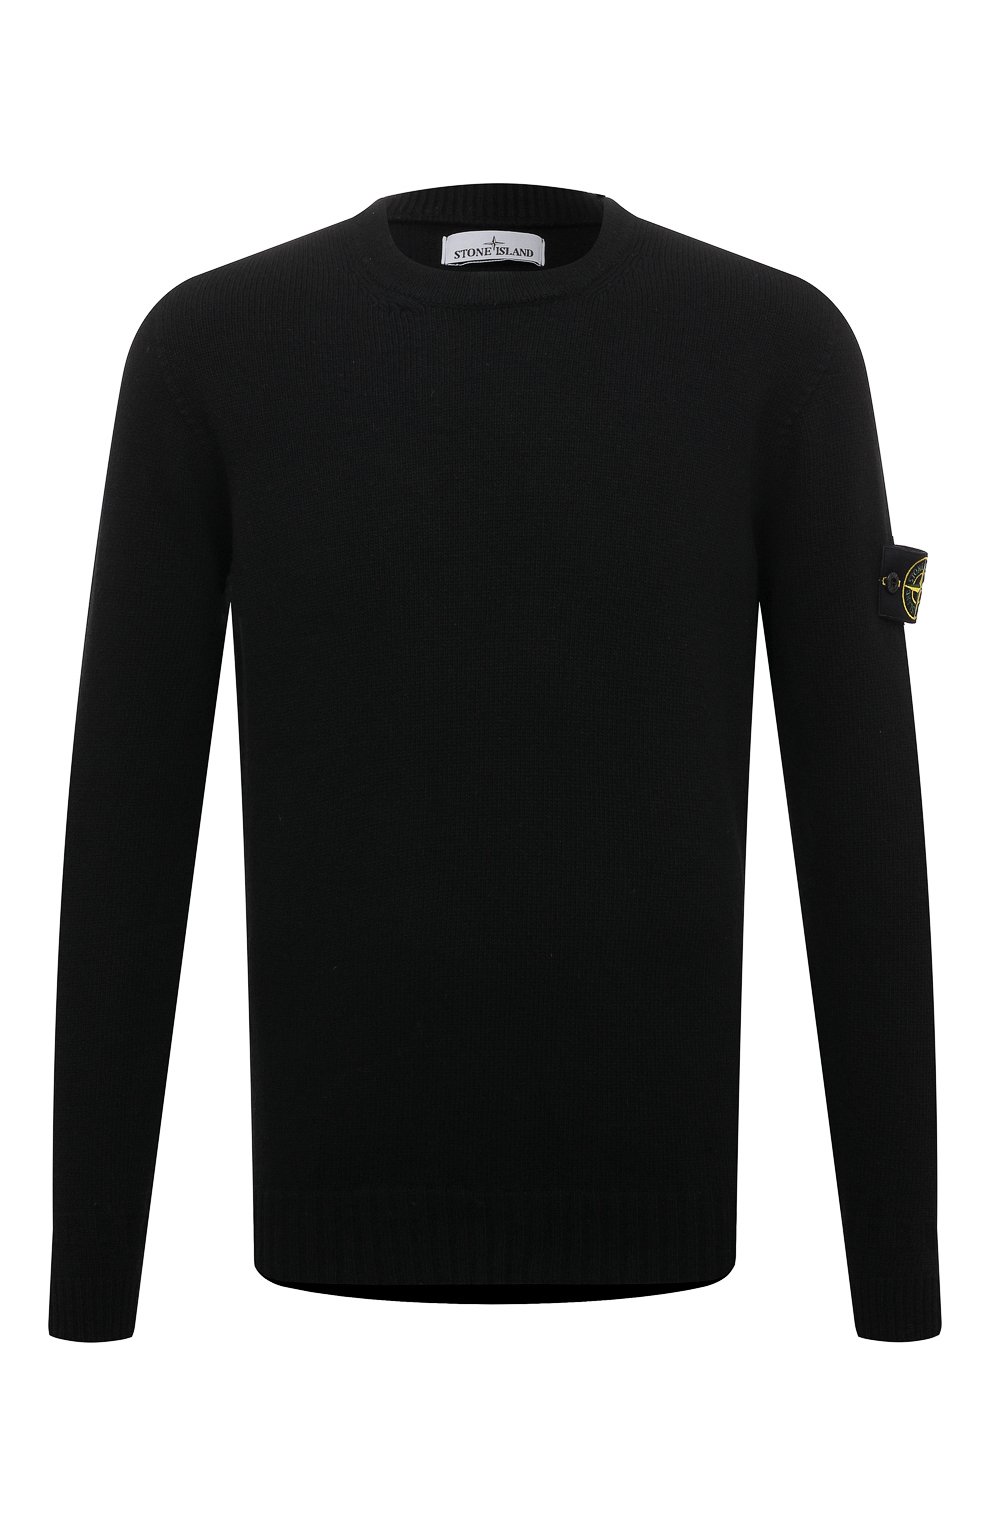 Шерстяной свитер Stone Island 7715524A3, цвет чёрный, размер 48